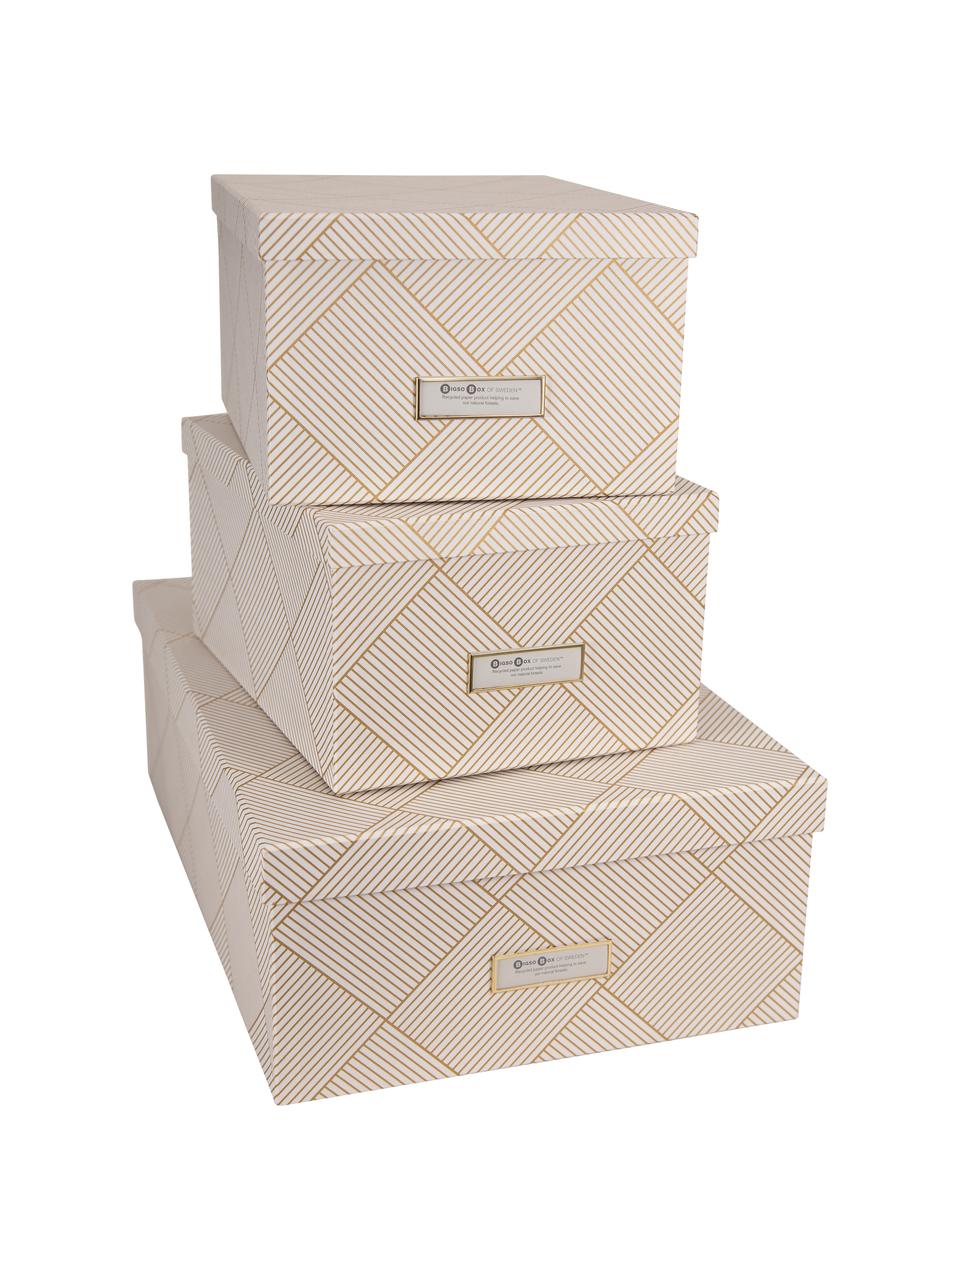 Set de cajas Inge, 3 pzas., Caja: cartón laminado, Dorado, blanco, Set de diferentes tamaños